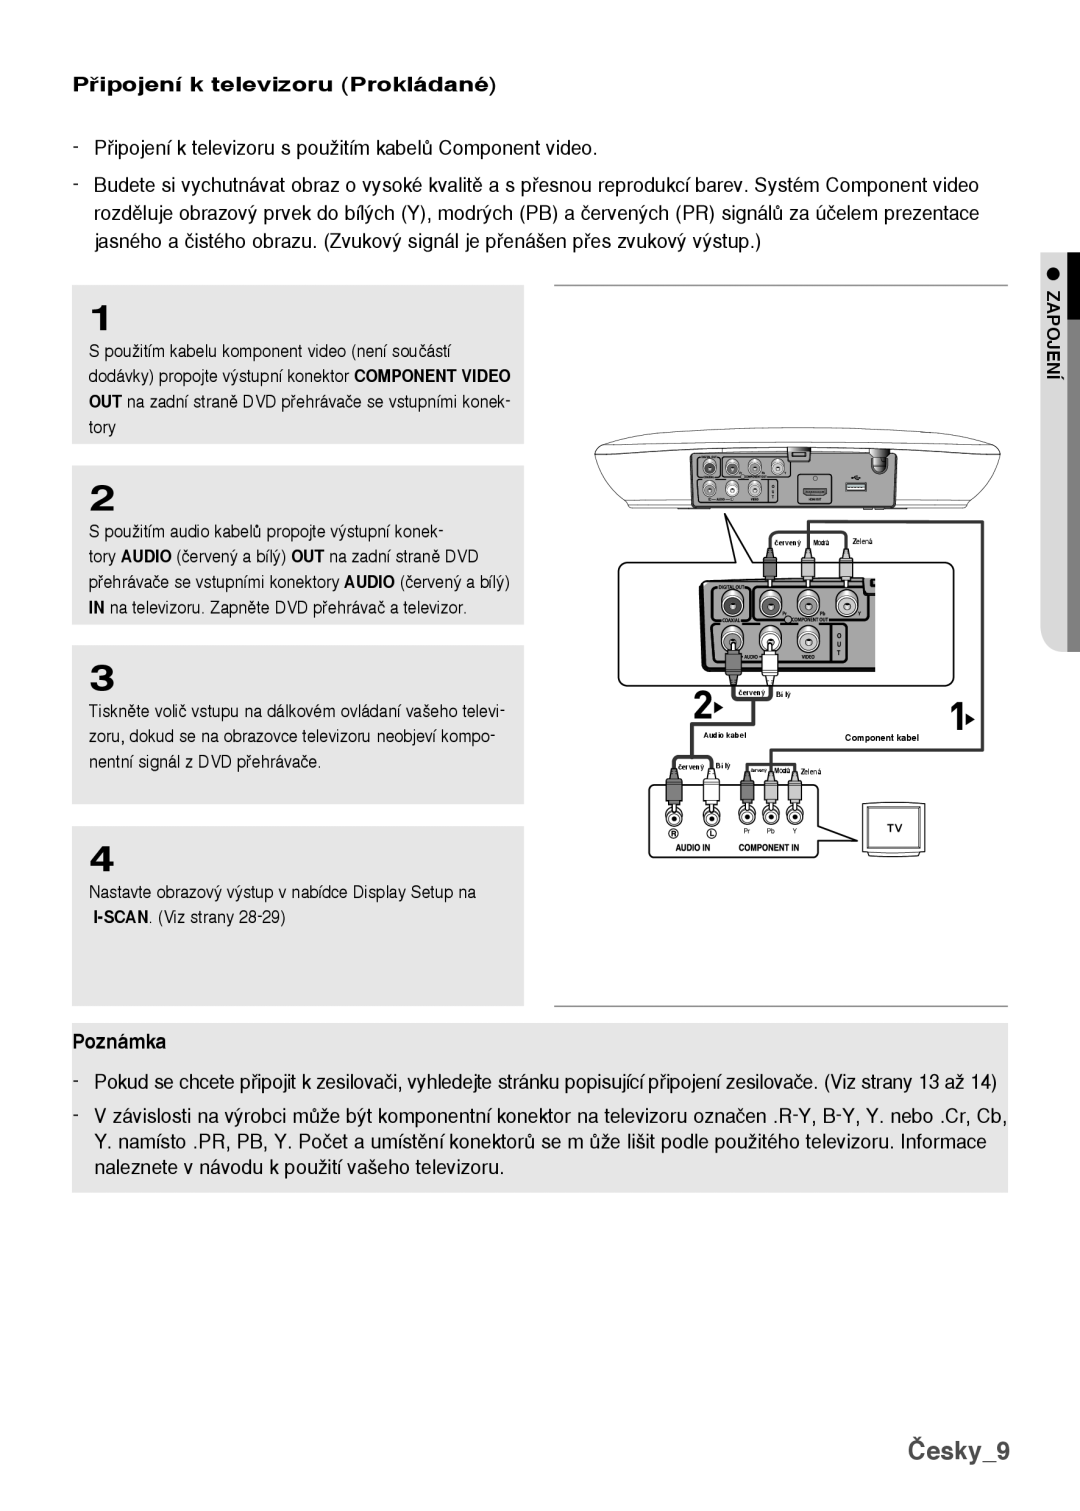 Samsung DVD-H1080/XET Česky, Pipojení k televizoru Prokládané, Pipojení k televizoru s pouÏitím kabelÛ Component video 